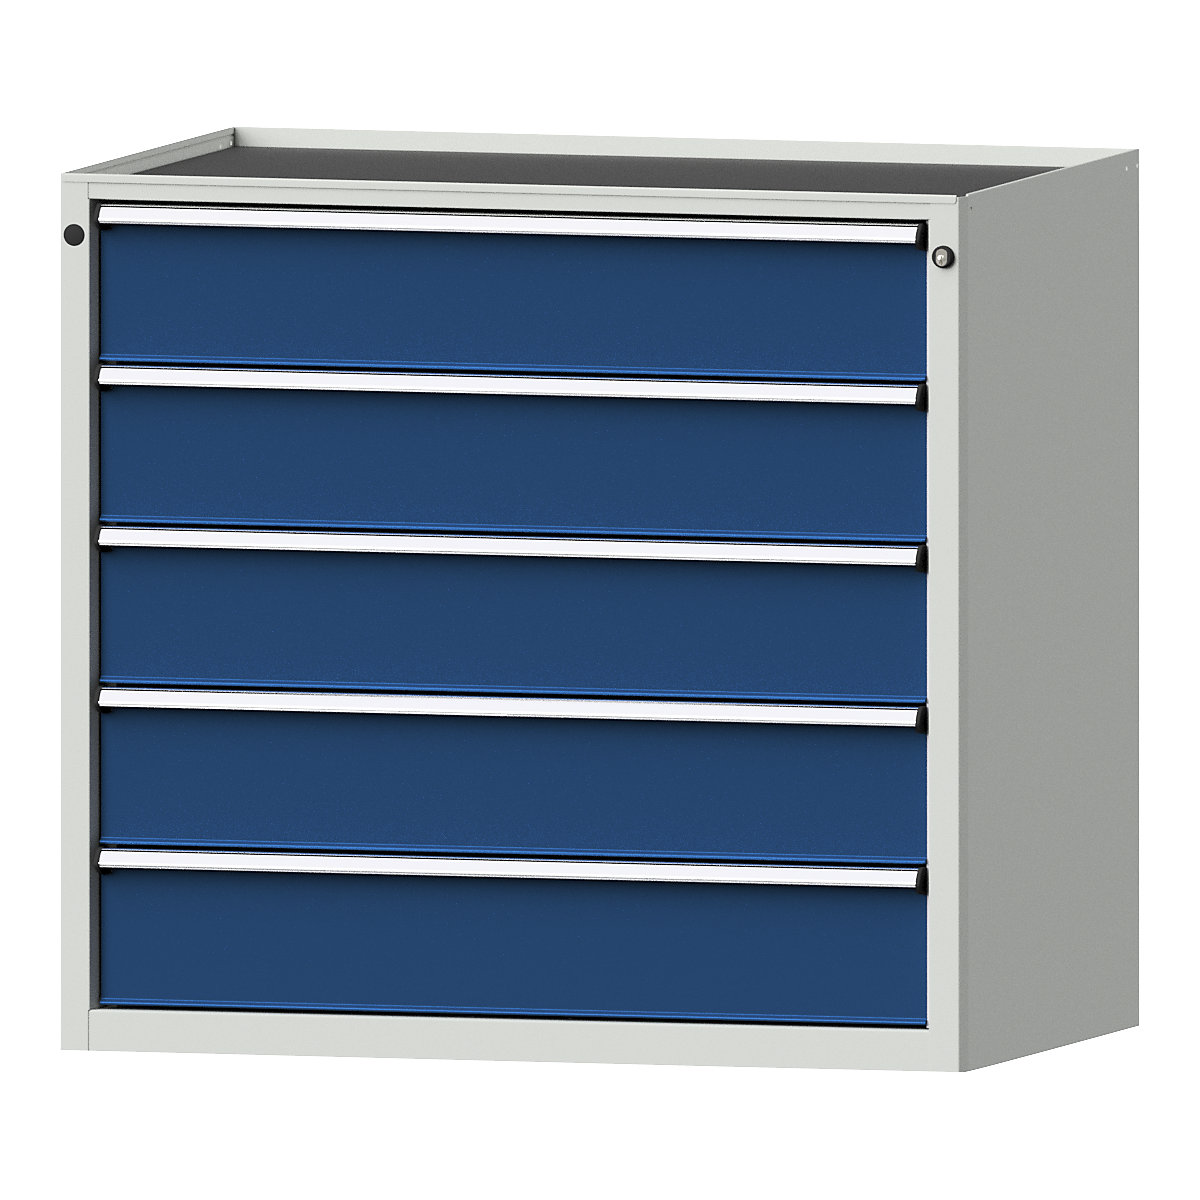 Szafa z szufladami – ANKE, szer. x głęb. 1060 x 675 mm, nośność szuflady 200 kg, 5 szuflad, wys. 980 mm, front niebieski gencjanowy-16